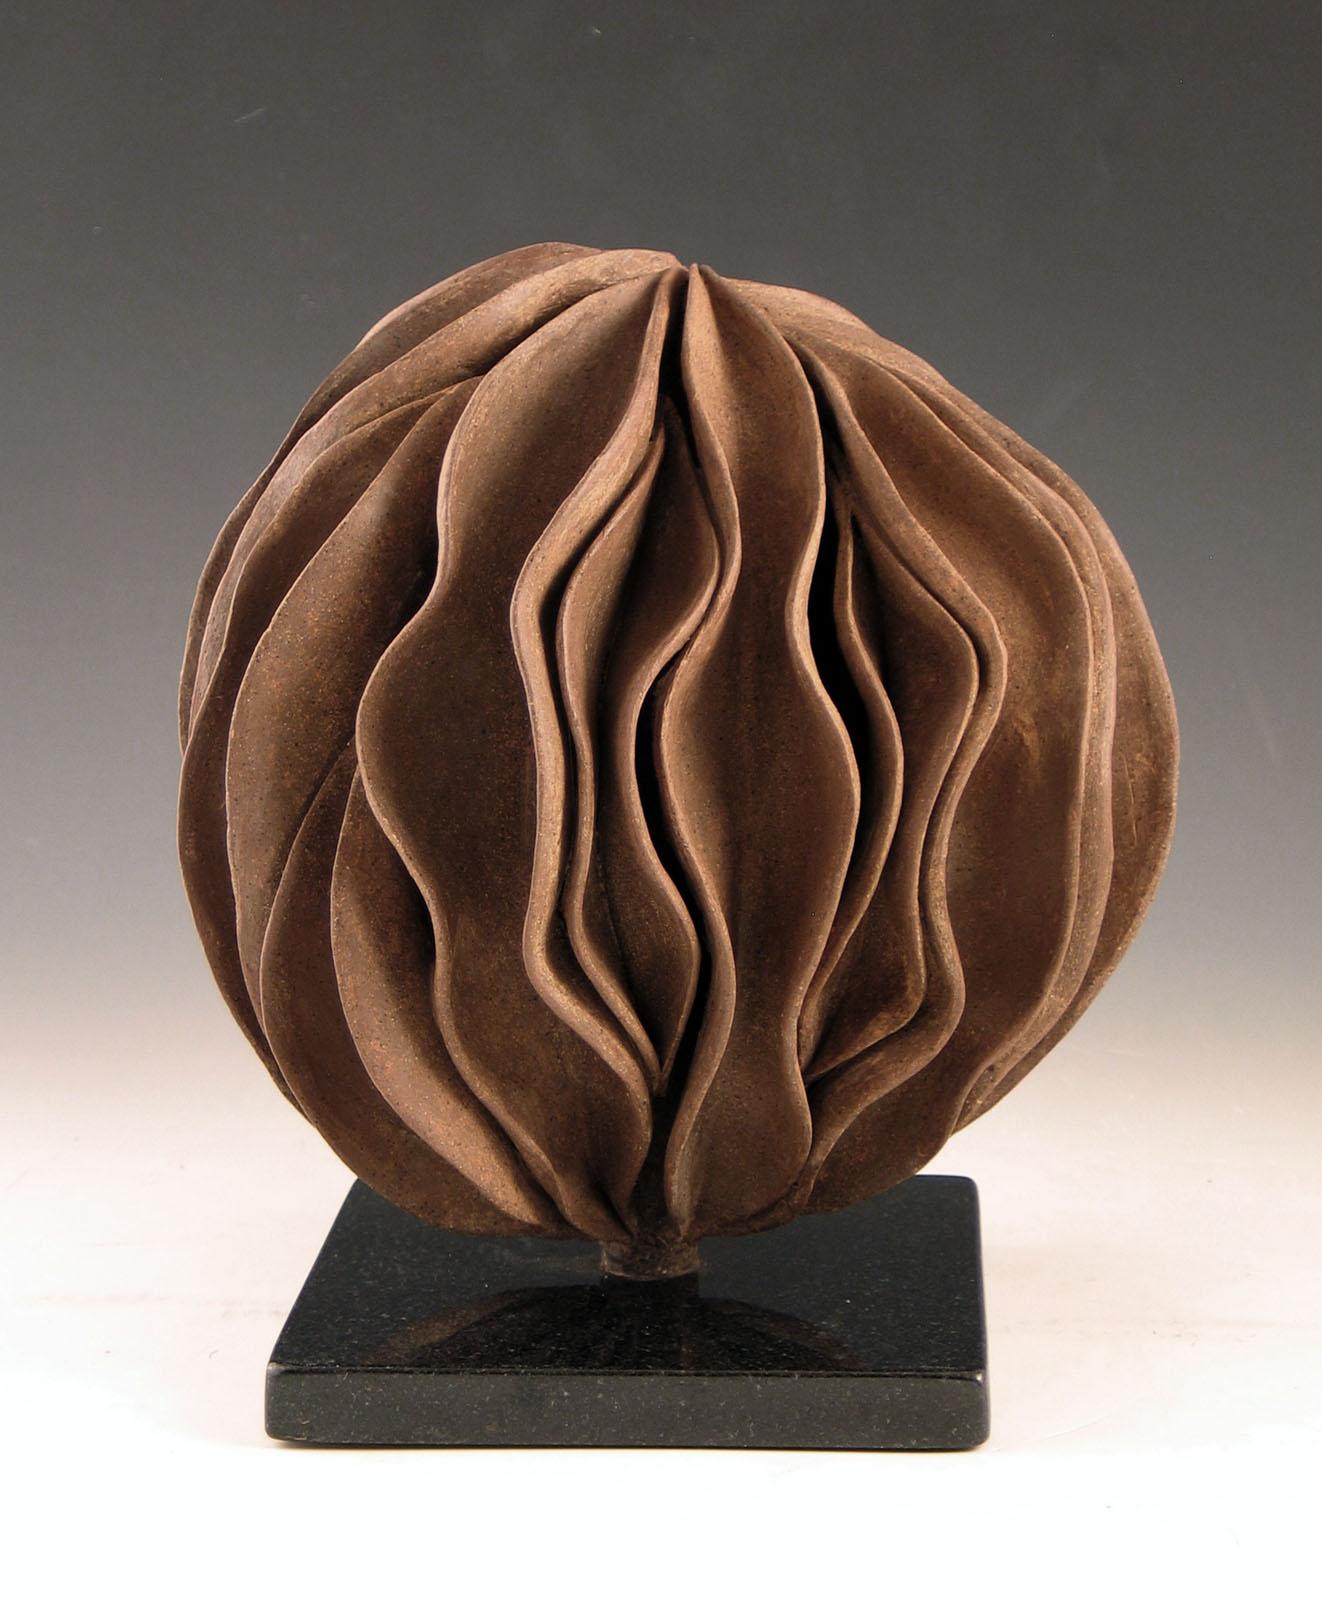 Elaine Lorenz Abstract Sculpture - “Revolver”, wavy shell swirls in rich browns